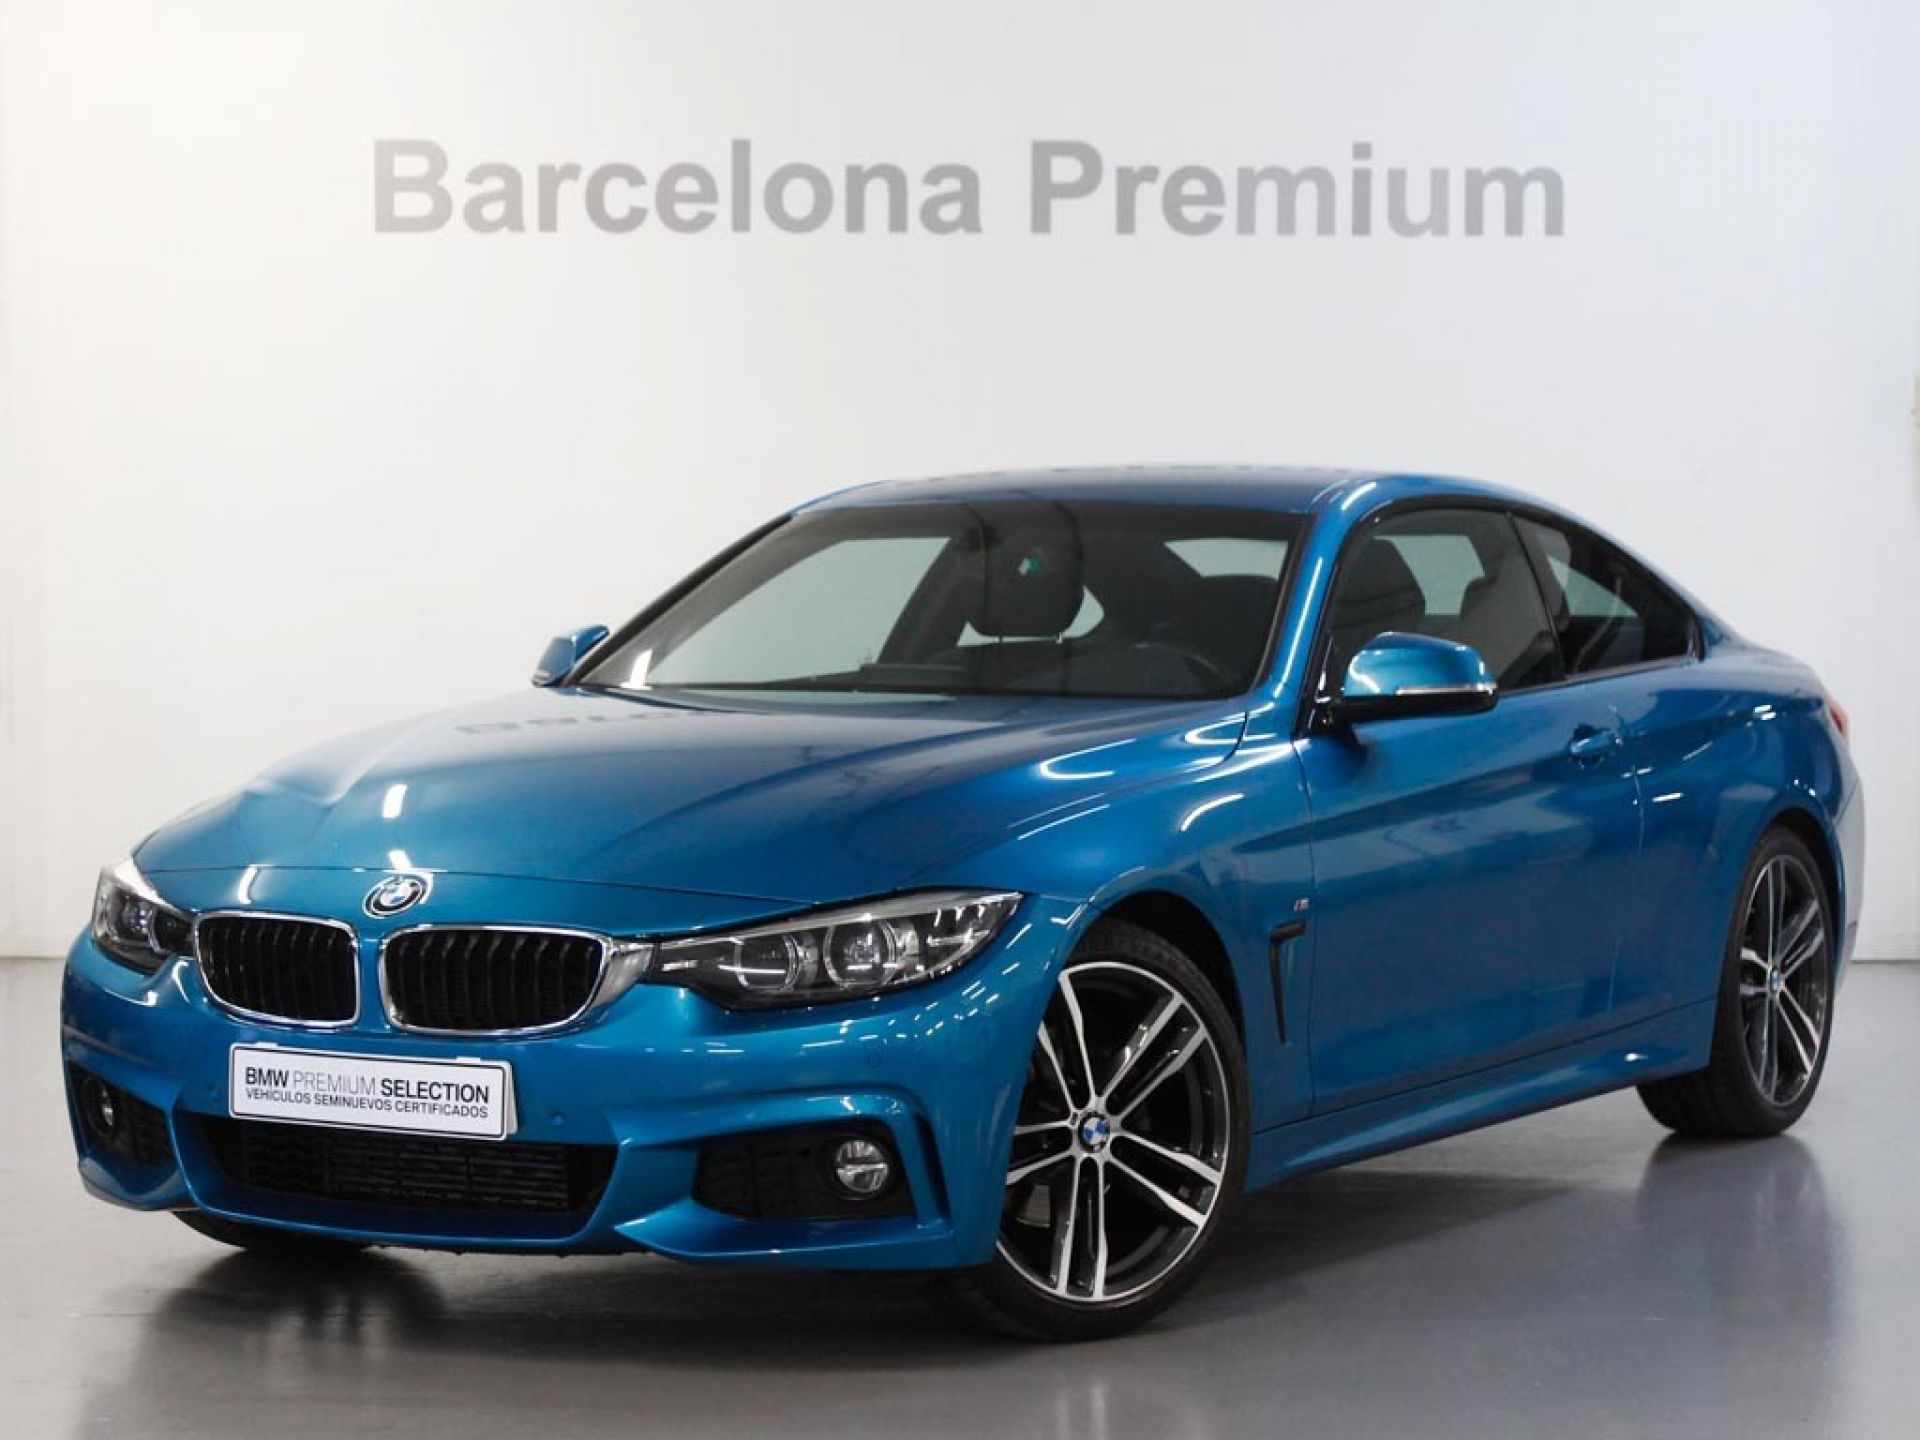 BMW 4 420d 2018 60269 kms Snapper Rocks Blue (metalizado) segunda mano Barcelona | Caetano Cuzco